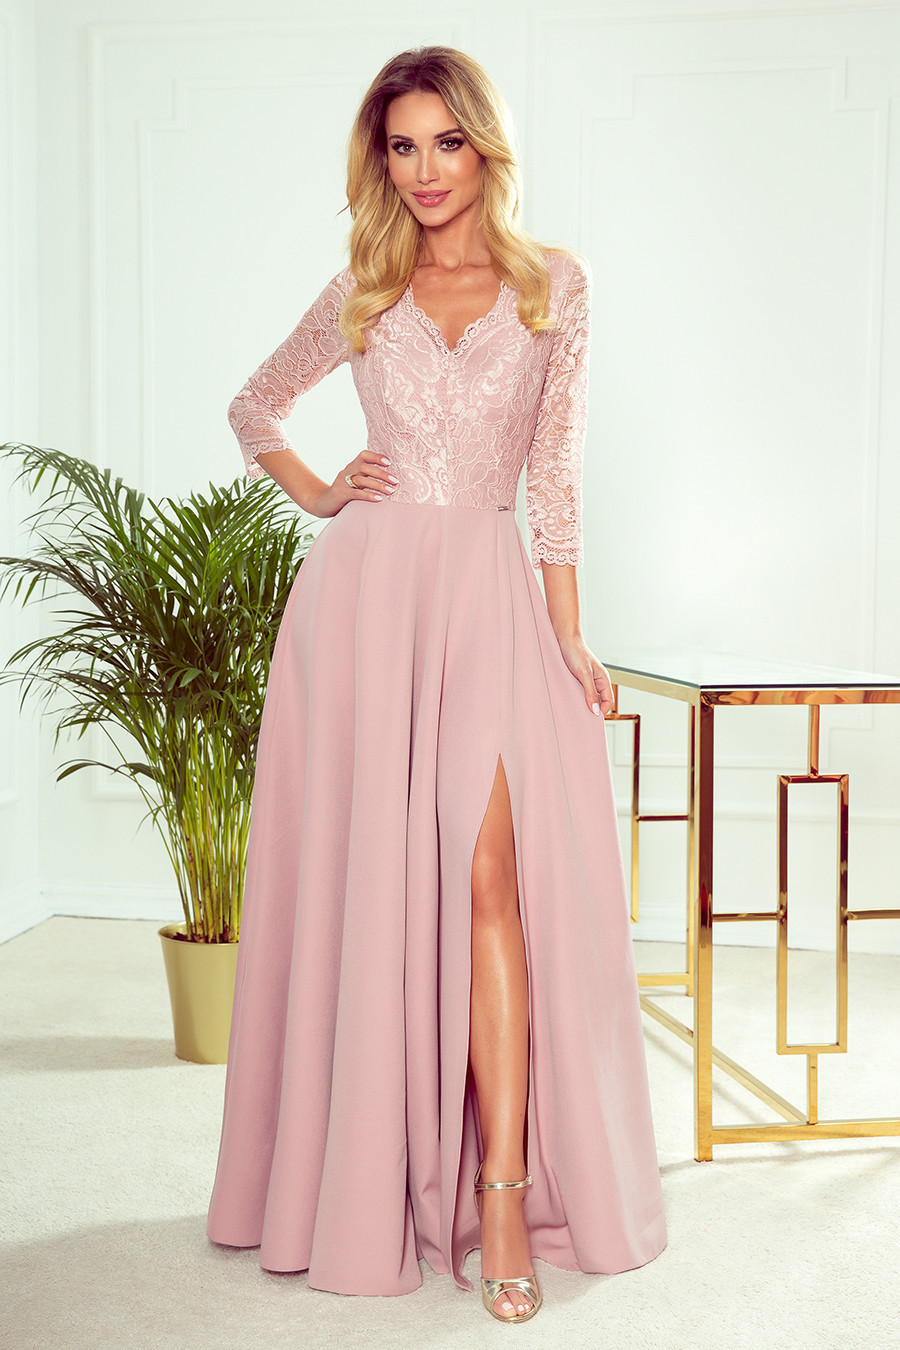 AMBER - Elegantní dlouhé krajkové dámské šaty v pudrově růžové barvě s dekoltem 309-4 XL